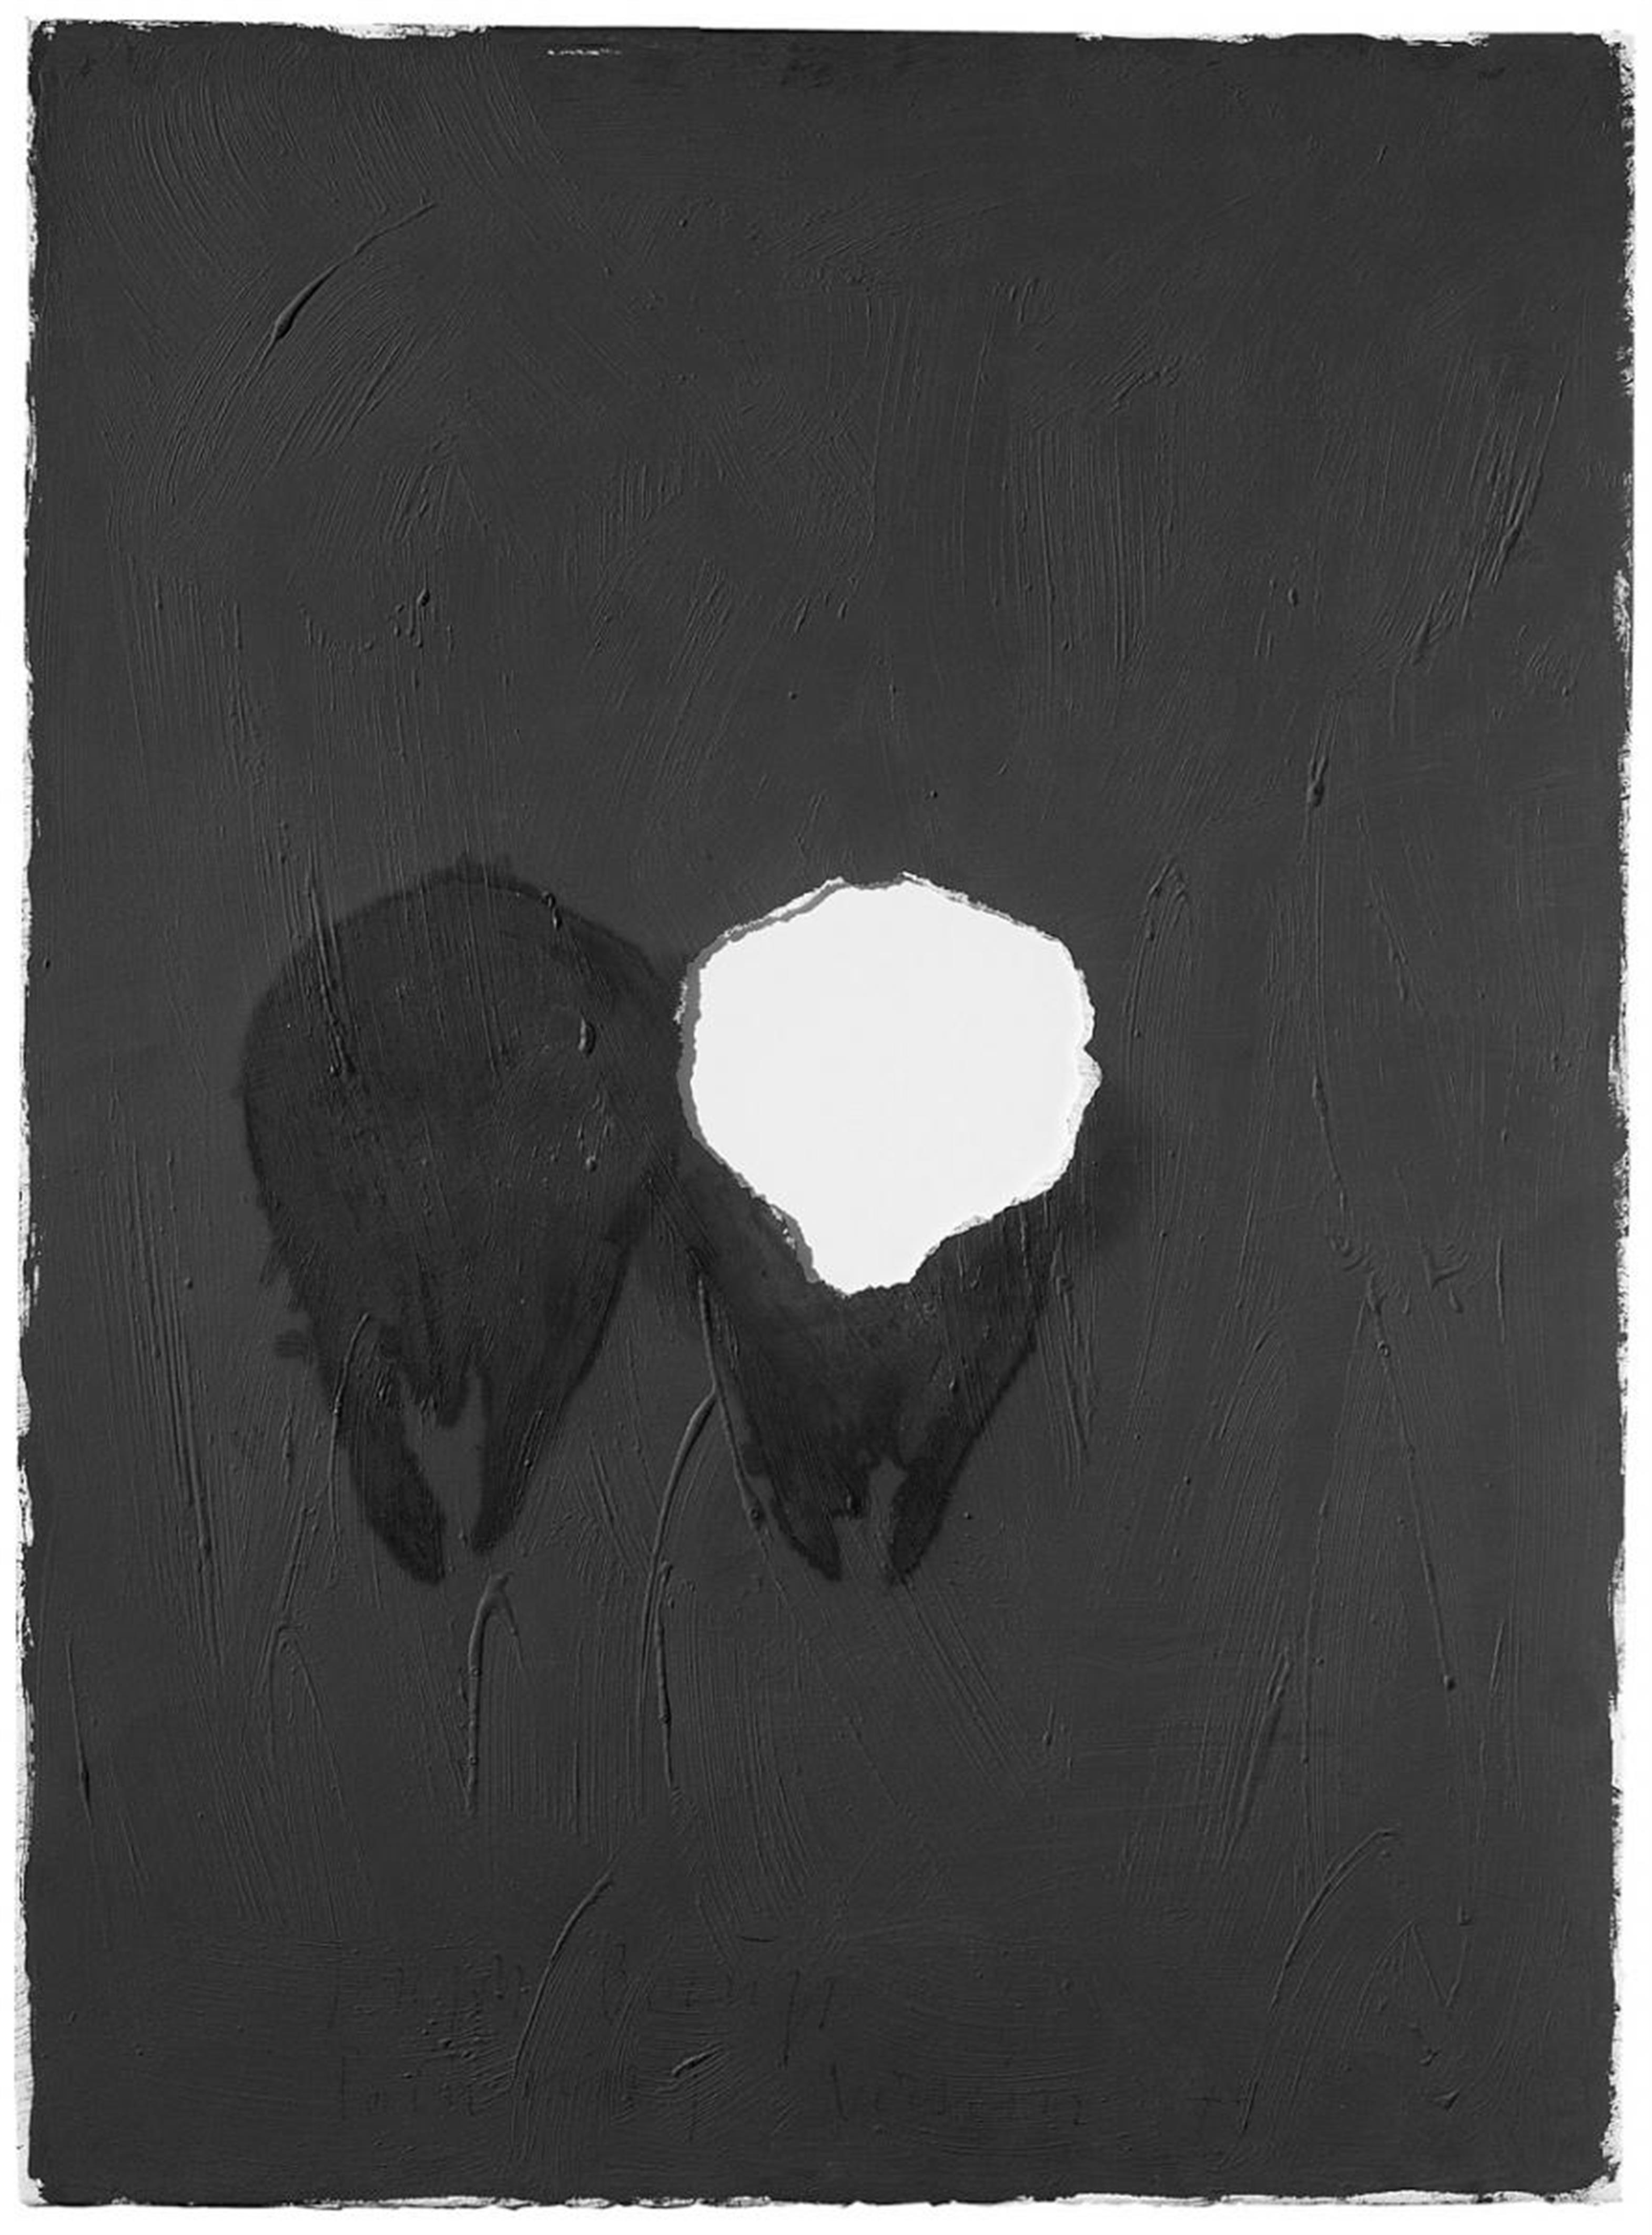 Joseph Beuys - Painting Version 1-90 - image-1